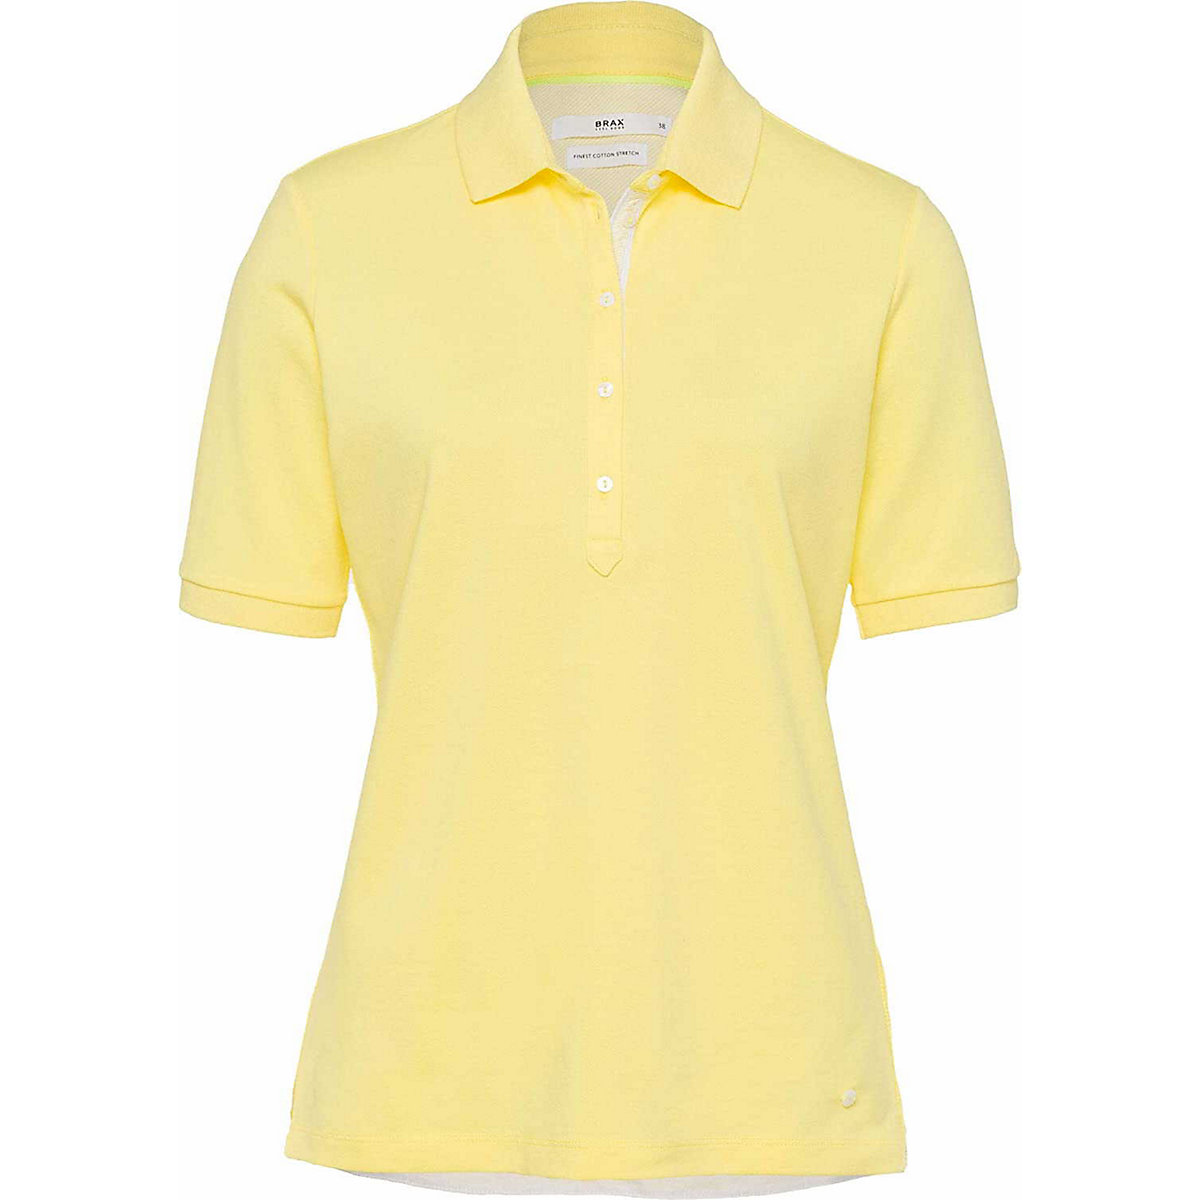 BRAX Poloshirt kurzarm gelb